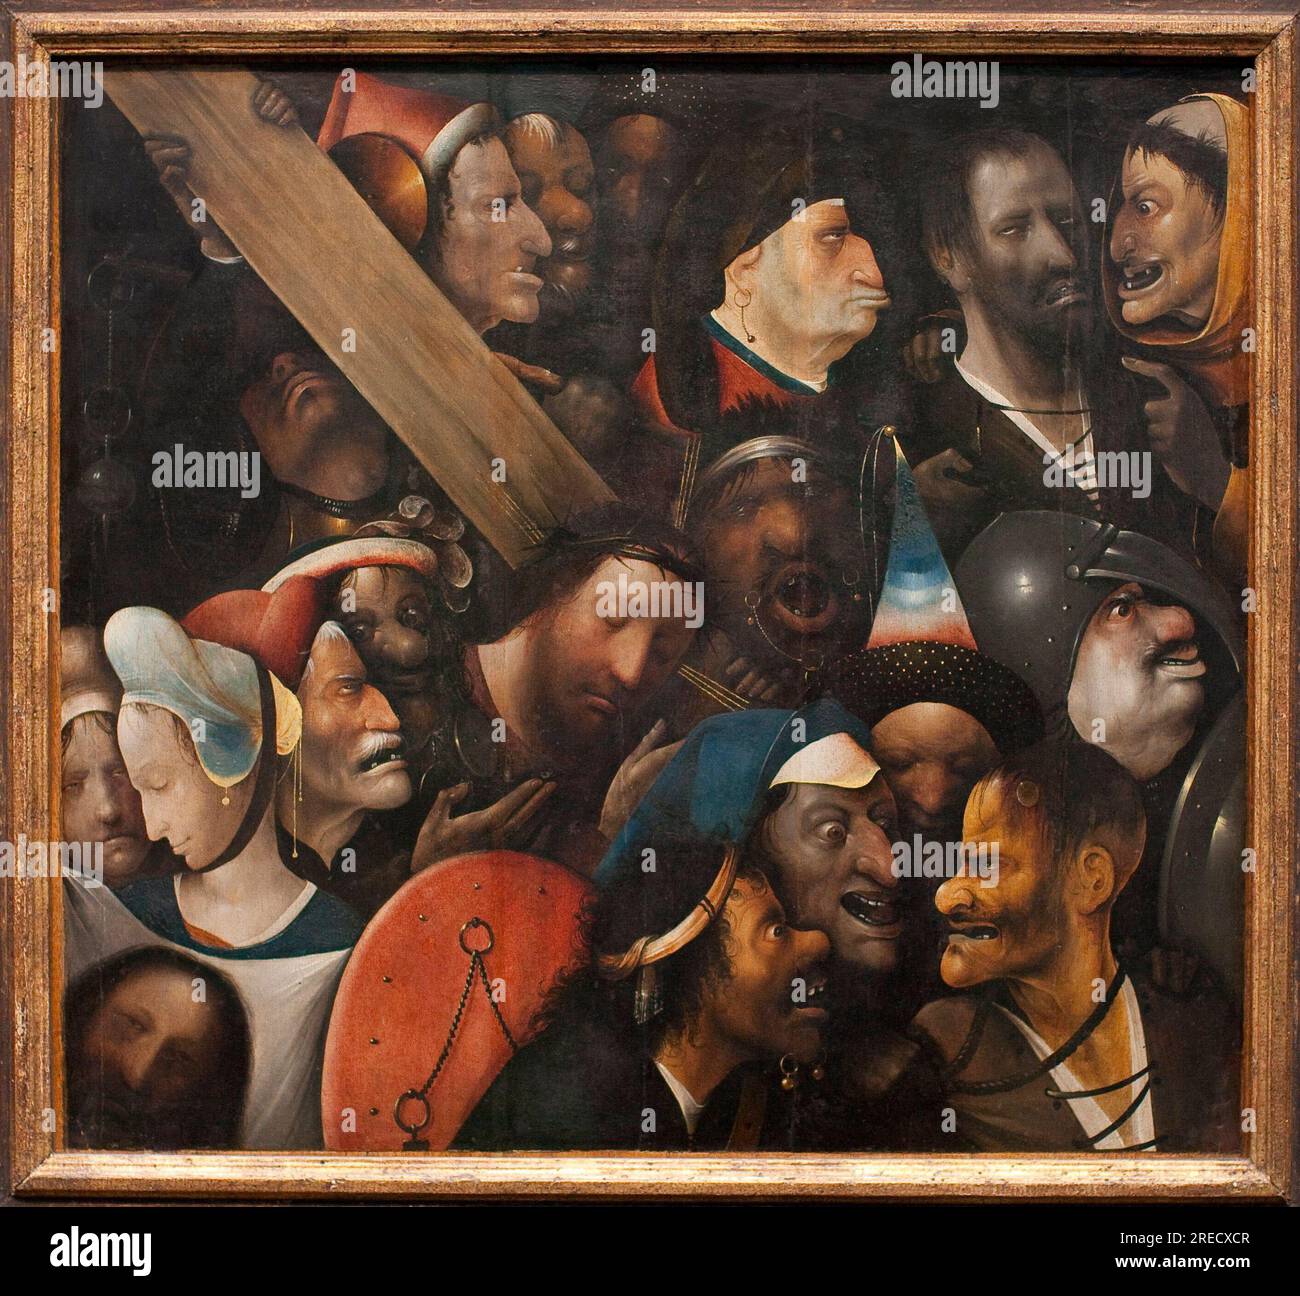 Le portement de Croix (le chemin de croix). Peinture de Hieronymus Van Aeken (Aken) dit Jerome Bosch (1450-1516), vers 1510-1516. Musee des beaux arts de Gand (Belgique). Stock Photo